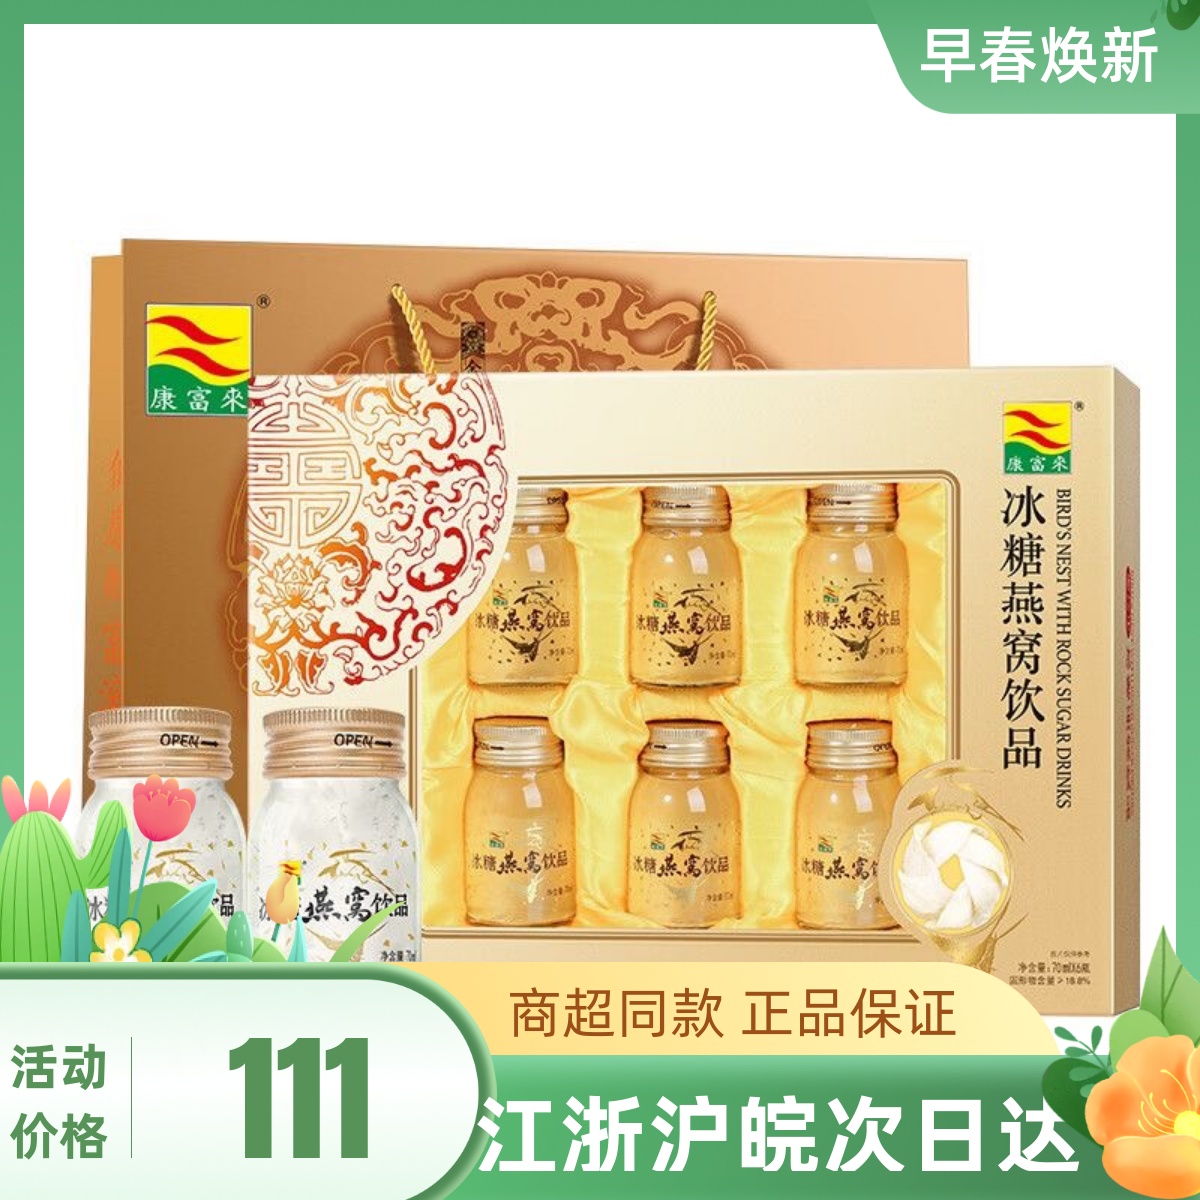 23年11月生产 康富来冰糖燕窝6瓶礼盒装营养品节日送礼礼品探亲